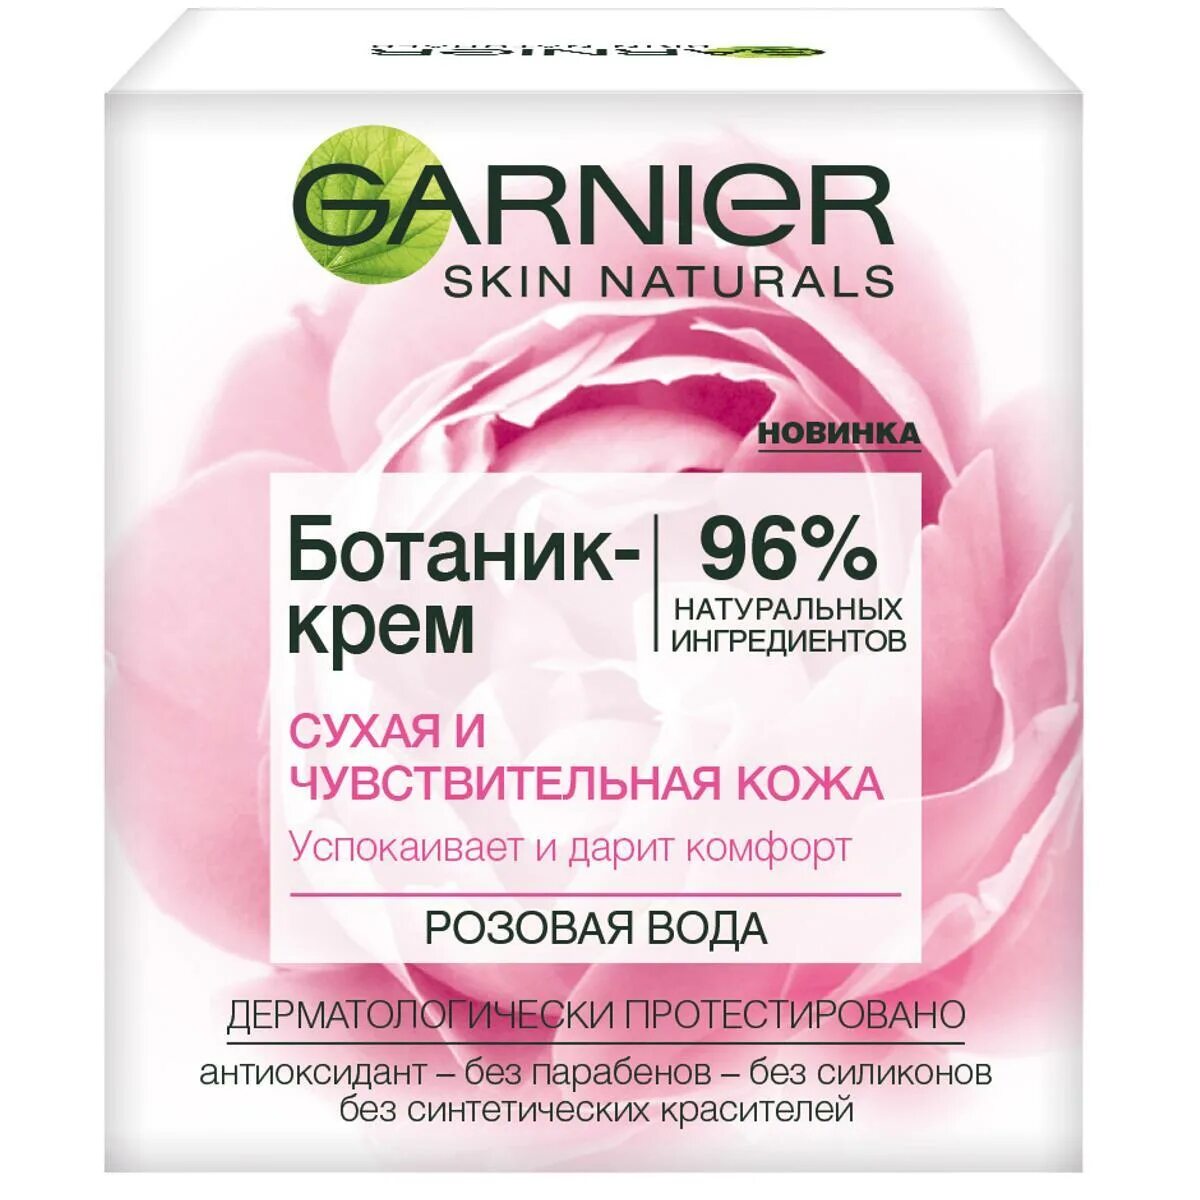 Ботаник-крем Garnier, розовая вода, для сухой и чувствительной кожи, 50 мл. Крем Garnier увлажняющий ботаник крем. Garnier ботаник-крем для лица розовая вода. Крем для сухой и чувствительной кожи купить